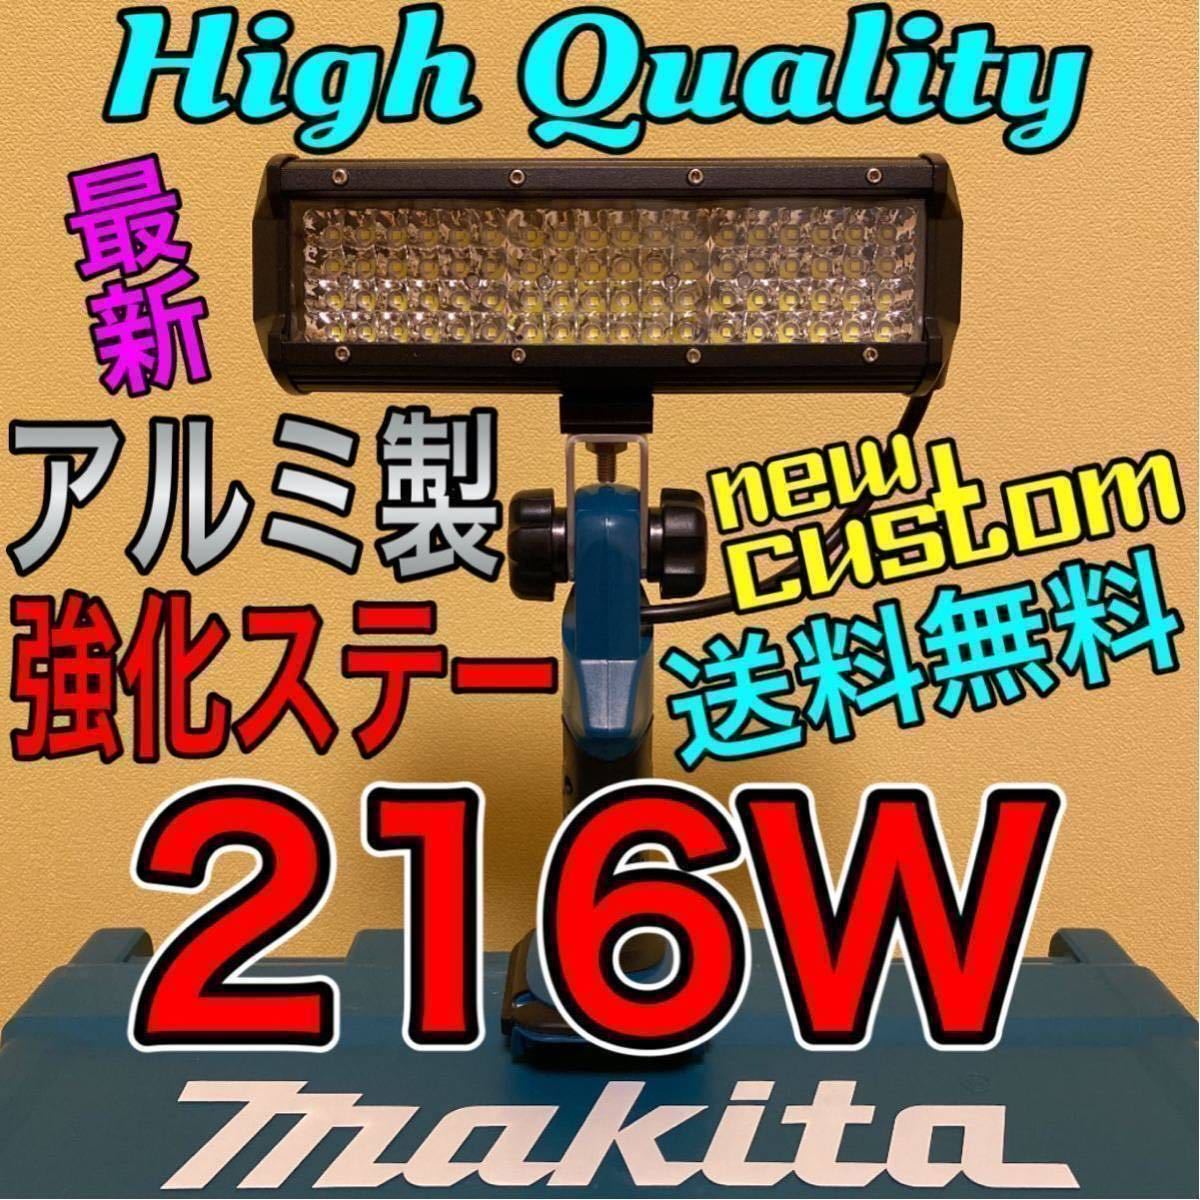 マキタ makita 216W LED ワークライト フラッシュライト 作業灯 集魚灯 ...